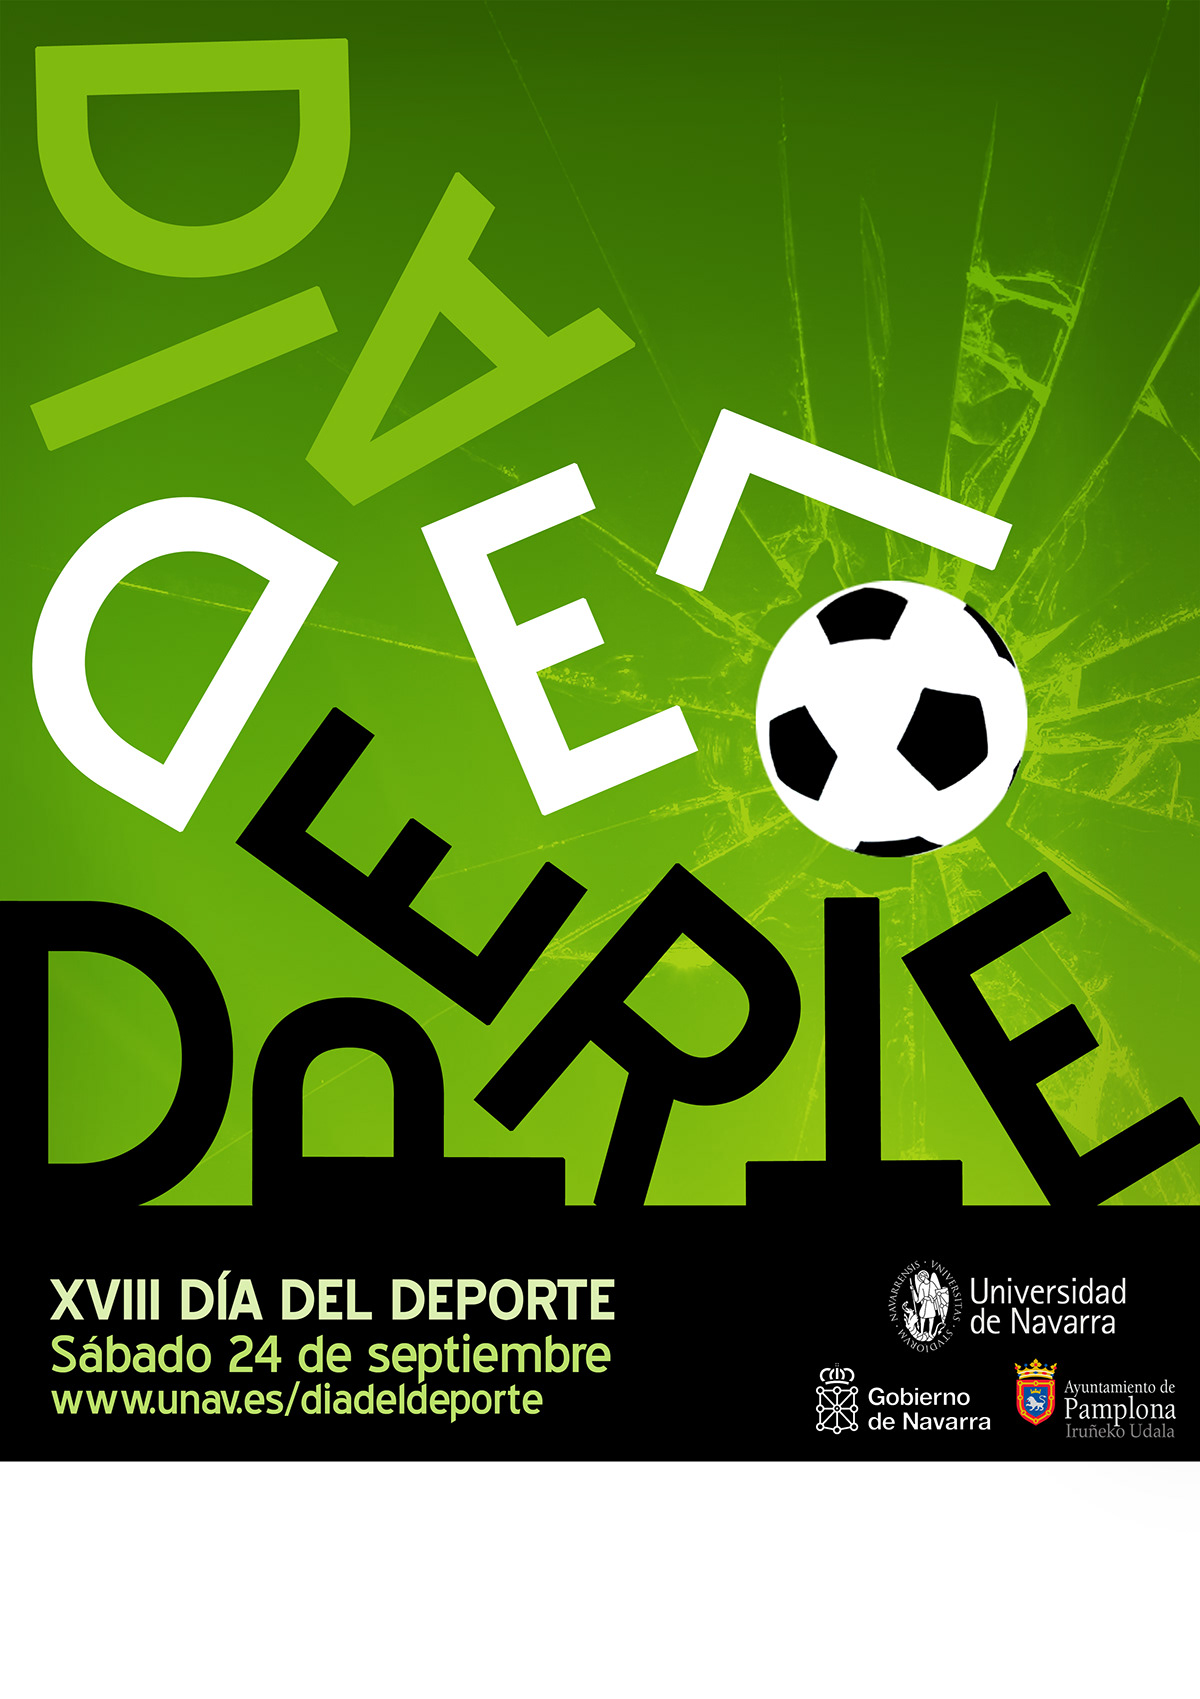 Universidad de Navarra Día del deporte cartel Concurso deporte balon sport sports contest unav